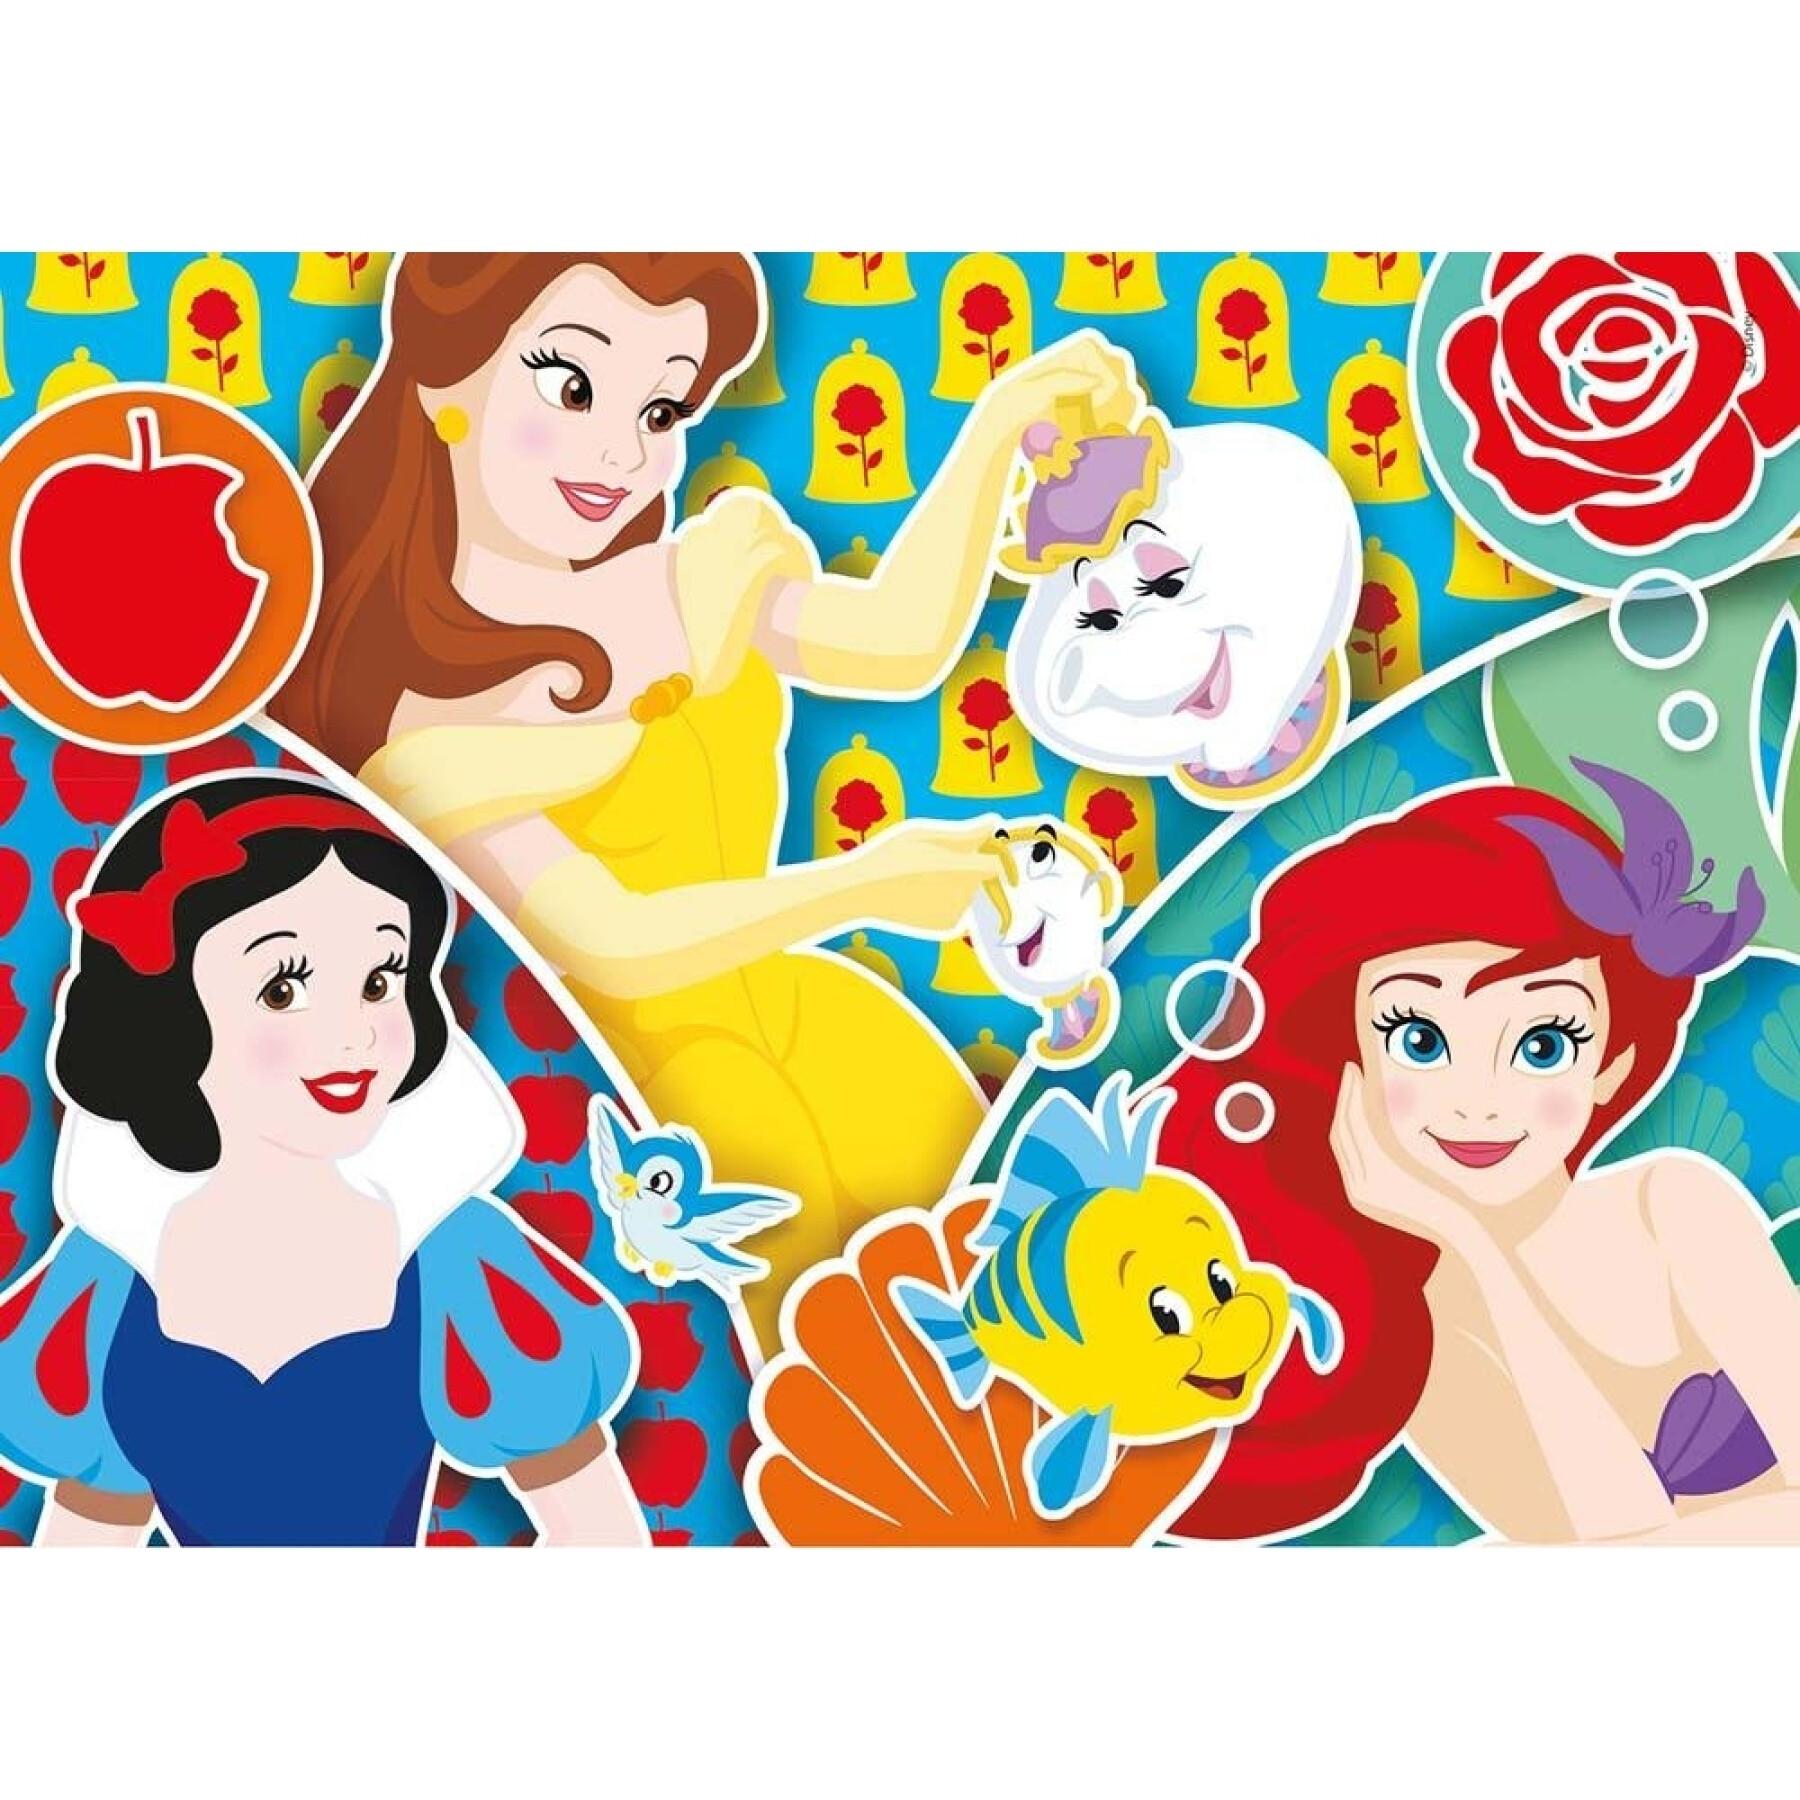 2-delige puzzel x 20 pièces Disney Princess